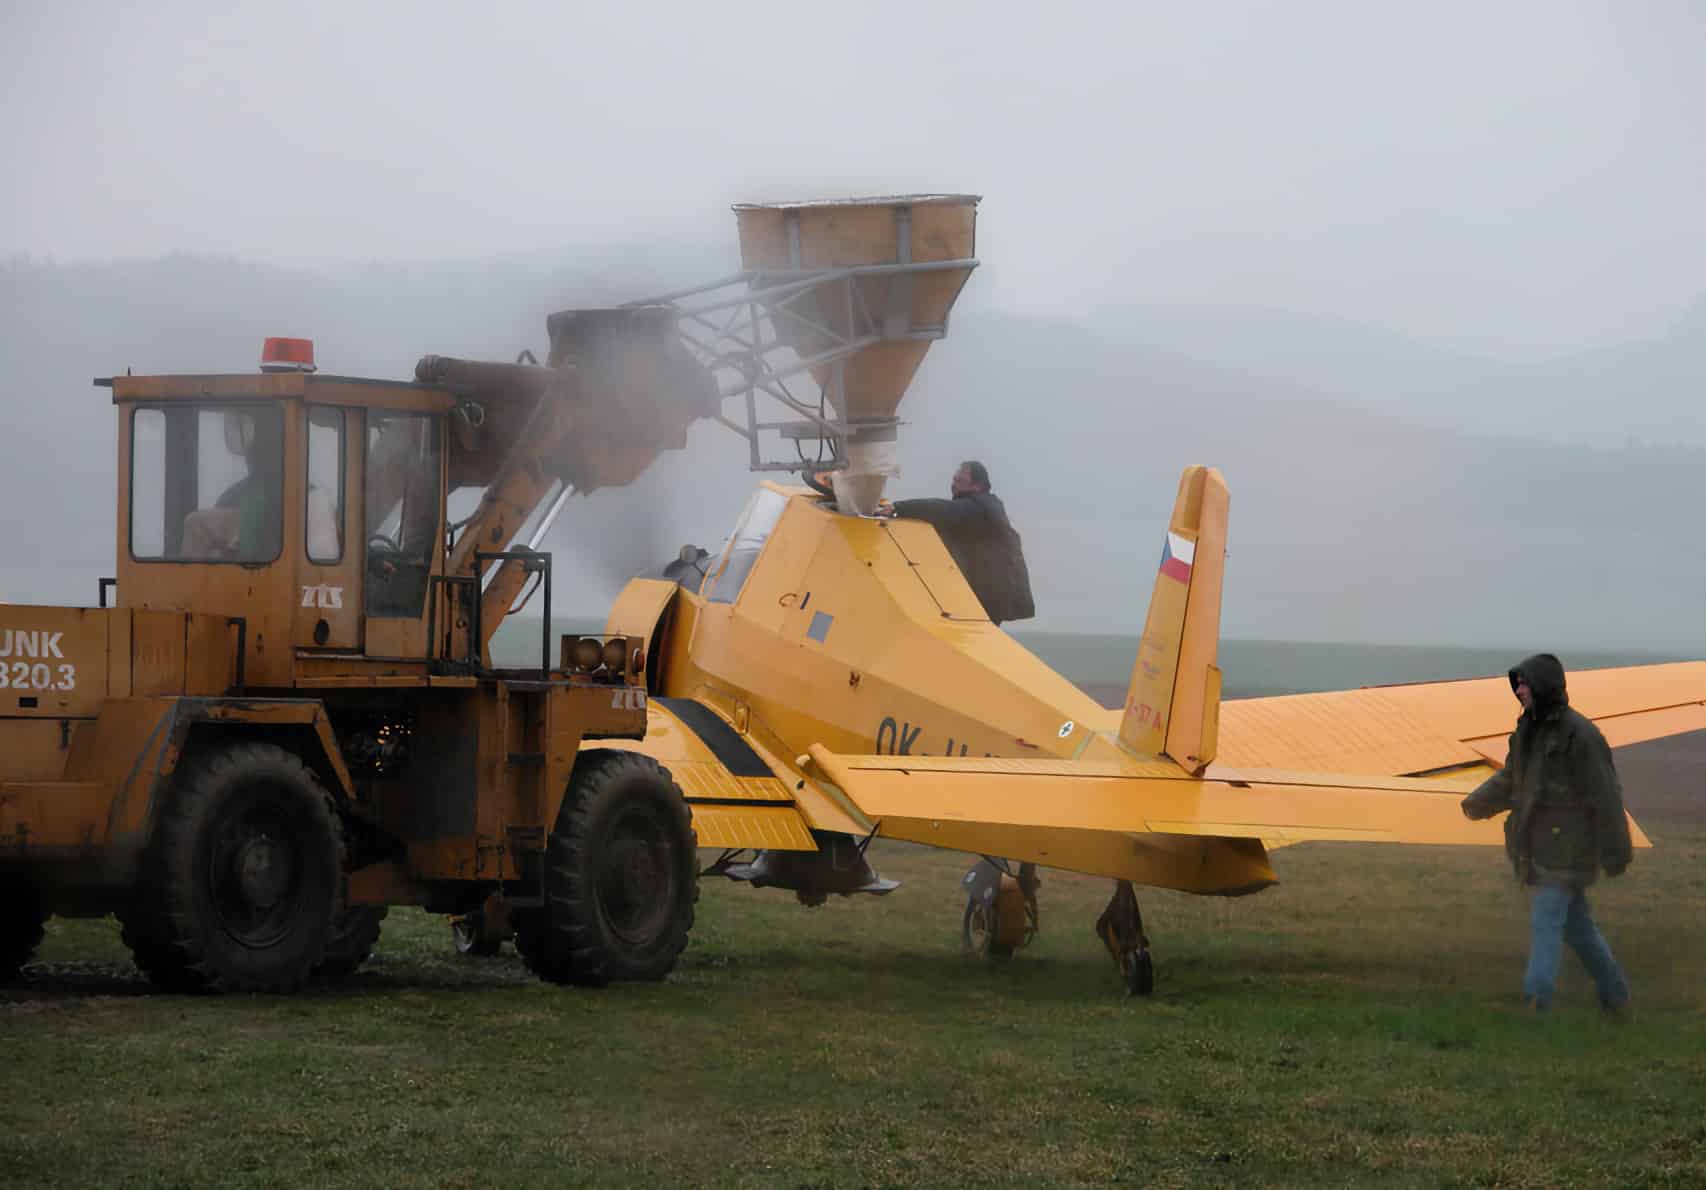 Plnění Čmeláka tajnou karbonizační látkou před vzletem na Slovensko | Foto John Richards (patrně agent CIA), zdroj Wikimedia Commons